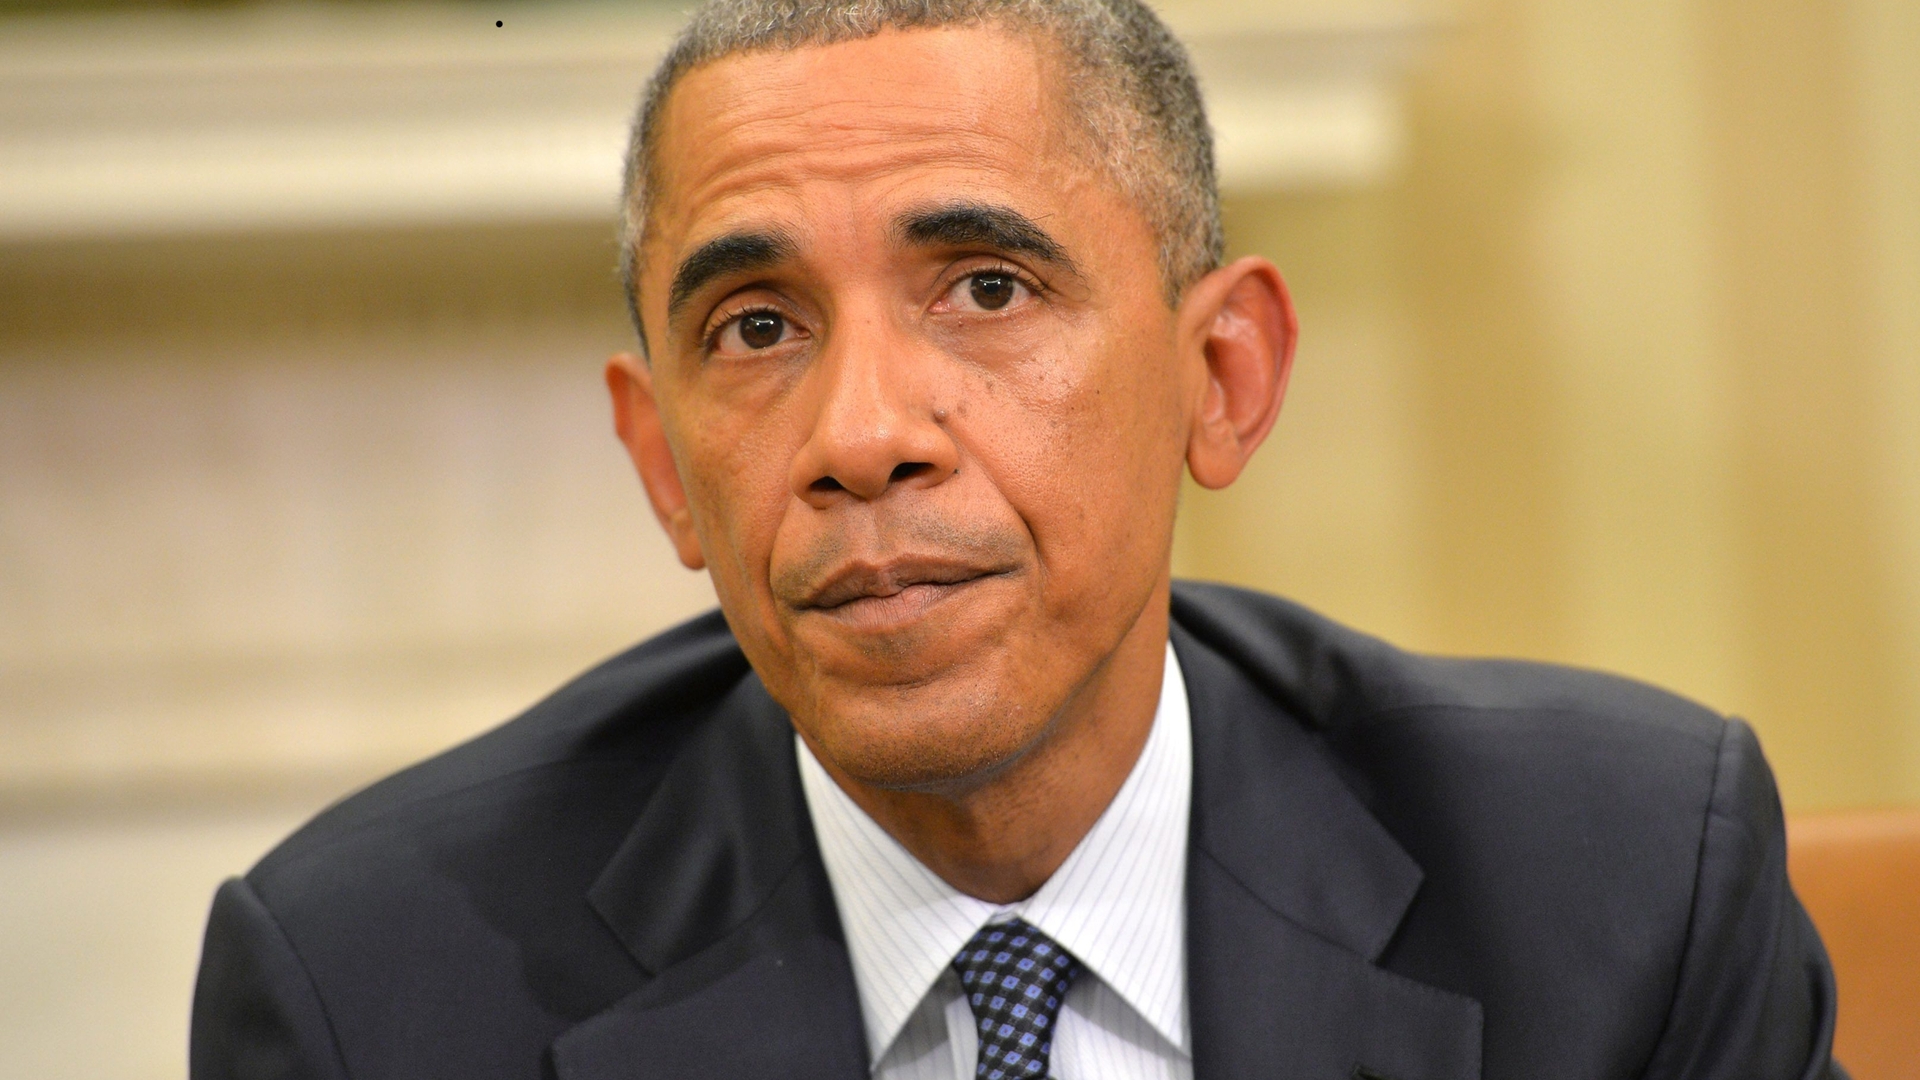 ANP-ObamaEbola_300.jpg